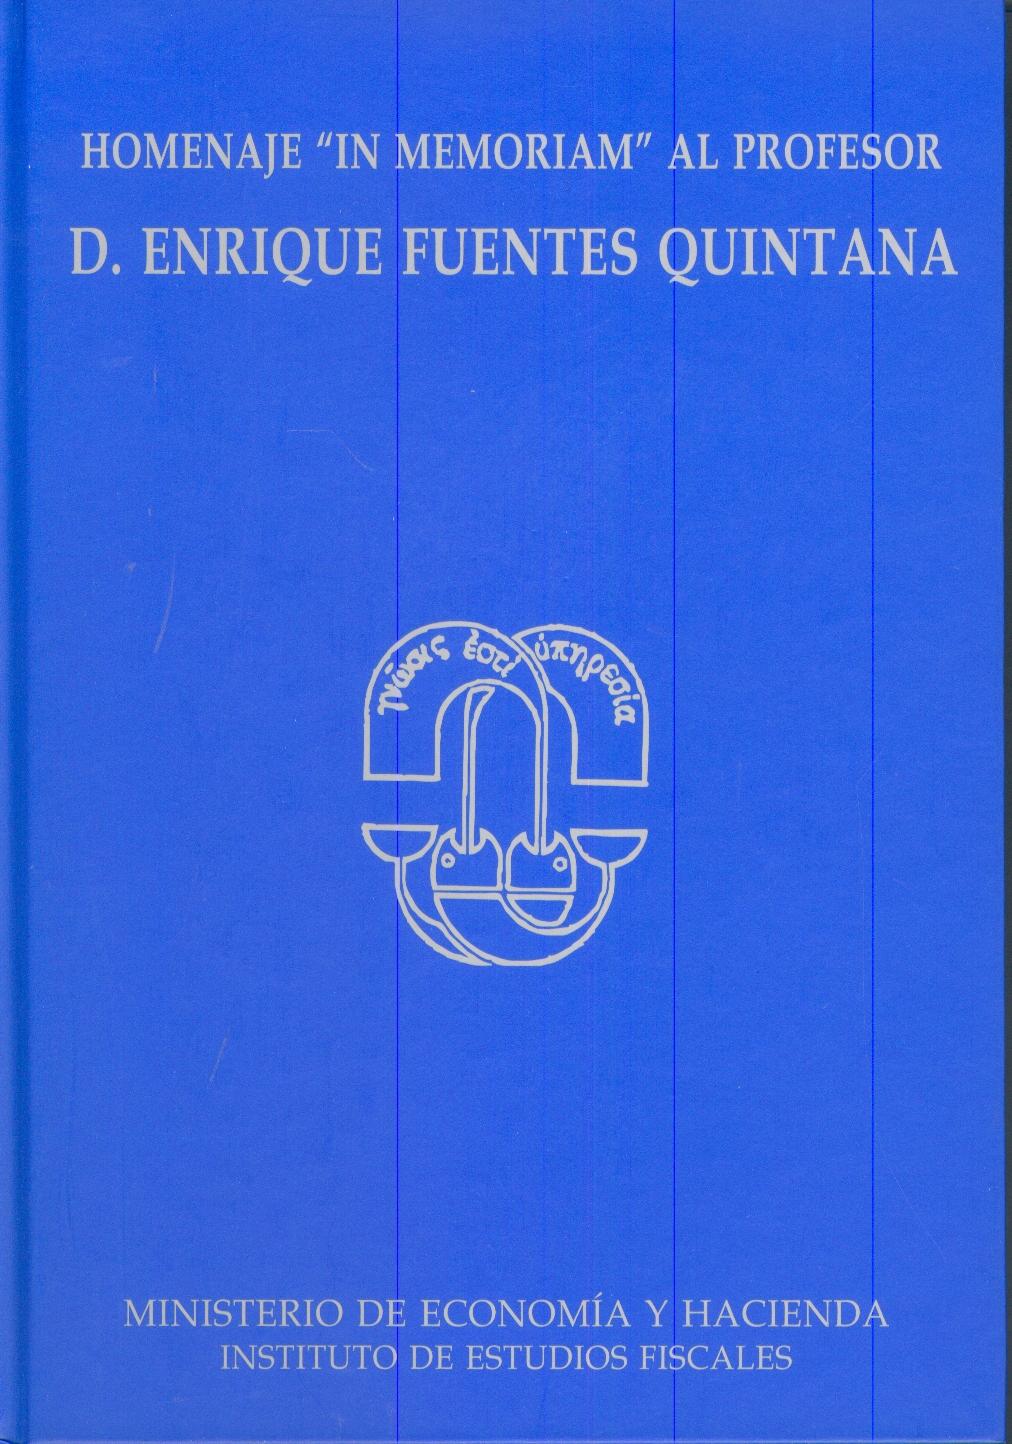 Homenaje "In Memoriam" al Profesor D. Enrique Fuentes Quintana